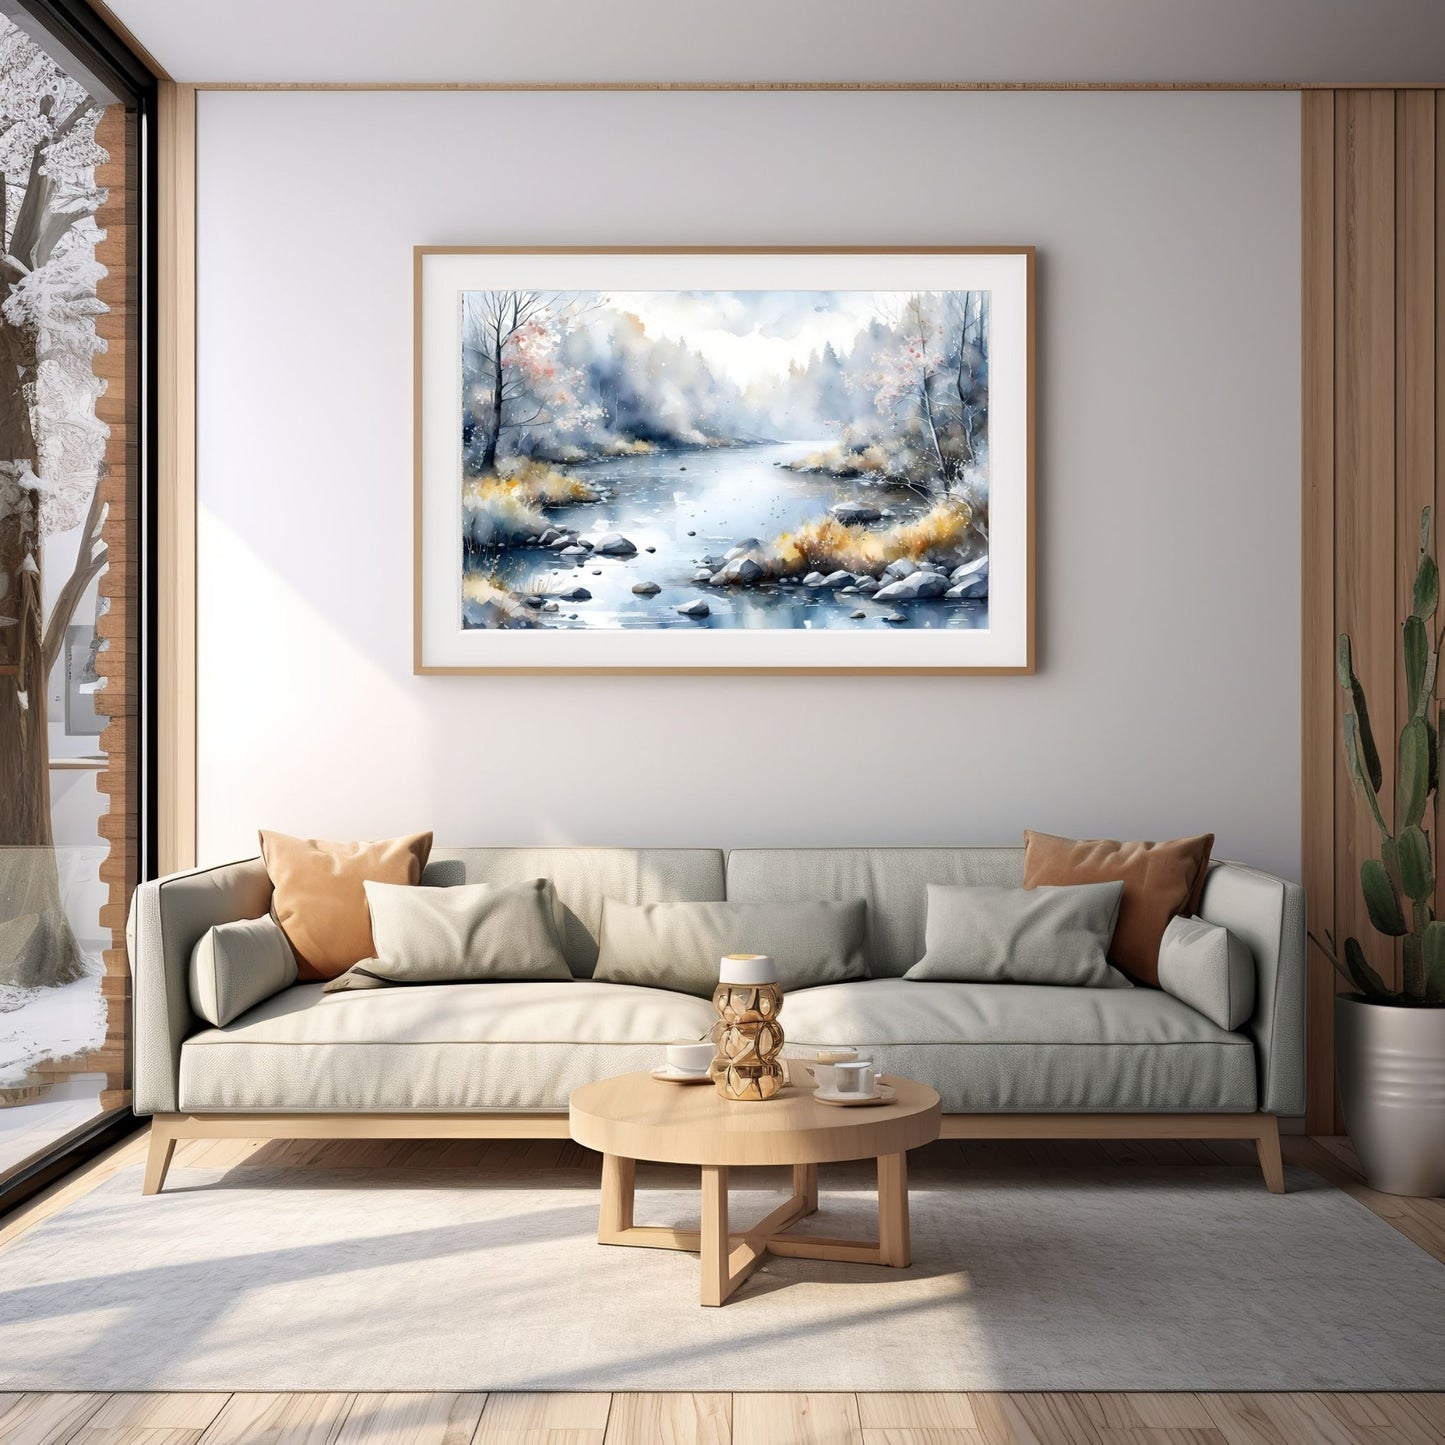 Digitalt kunstmaleri i akvarell som fanger essensen av vinterscenene med et sjarmerende landskap der snøfnugg danser i luften. Illustrasjonsfoto viser motiver som plakkat i ramme som henger over en sofa.